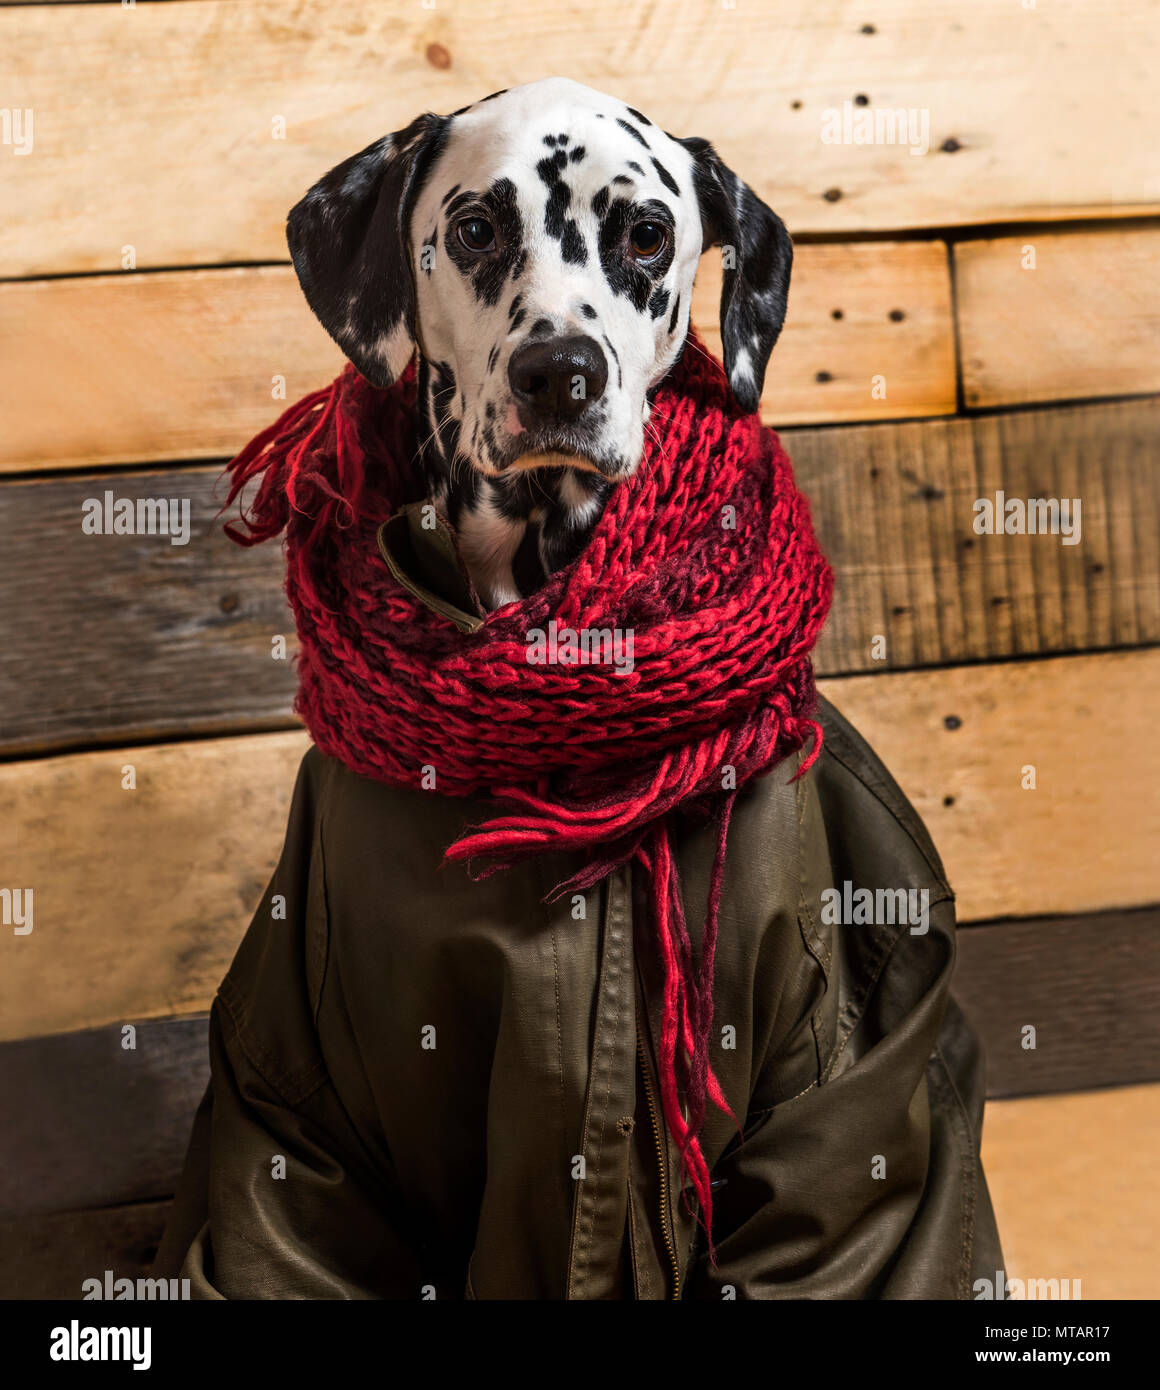 Dalmatiner eingewickelt in Schal und Mantel vor Holz- Hintergrund  Stockfotografie - Alamy